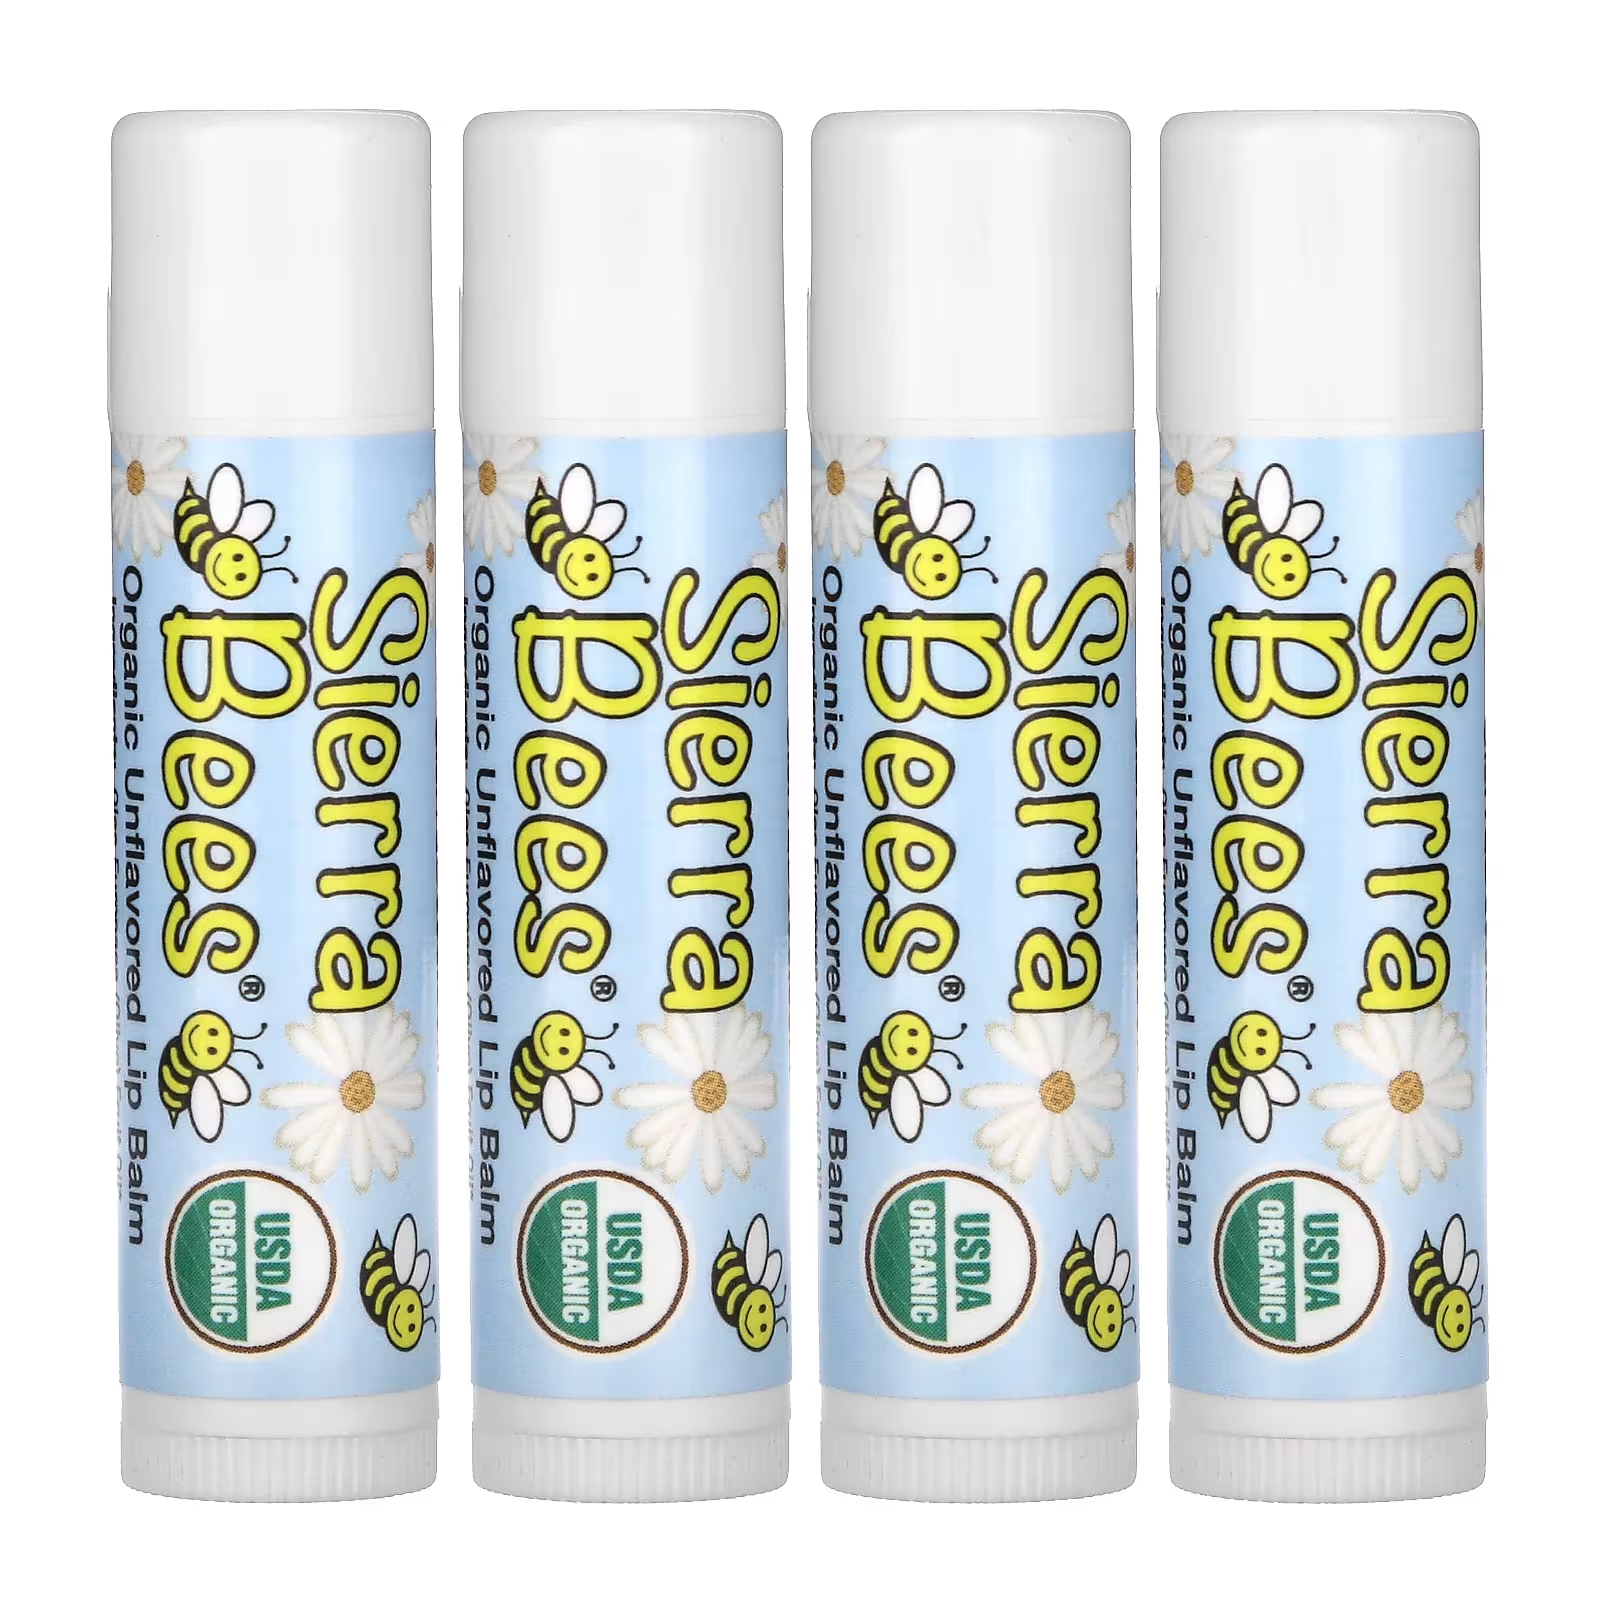 Органические бальзамы для губ Sierra Bees, 4 упаковки по 4,25 г badger company органические классические карандаши бальзамы для губ синяя коробка 4 карандаша бальзама 4 2 г 0 15 унции каждый